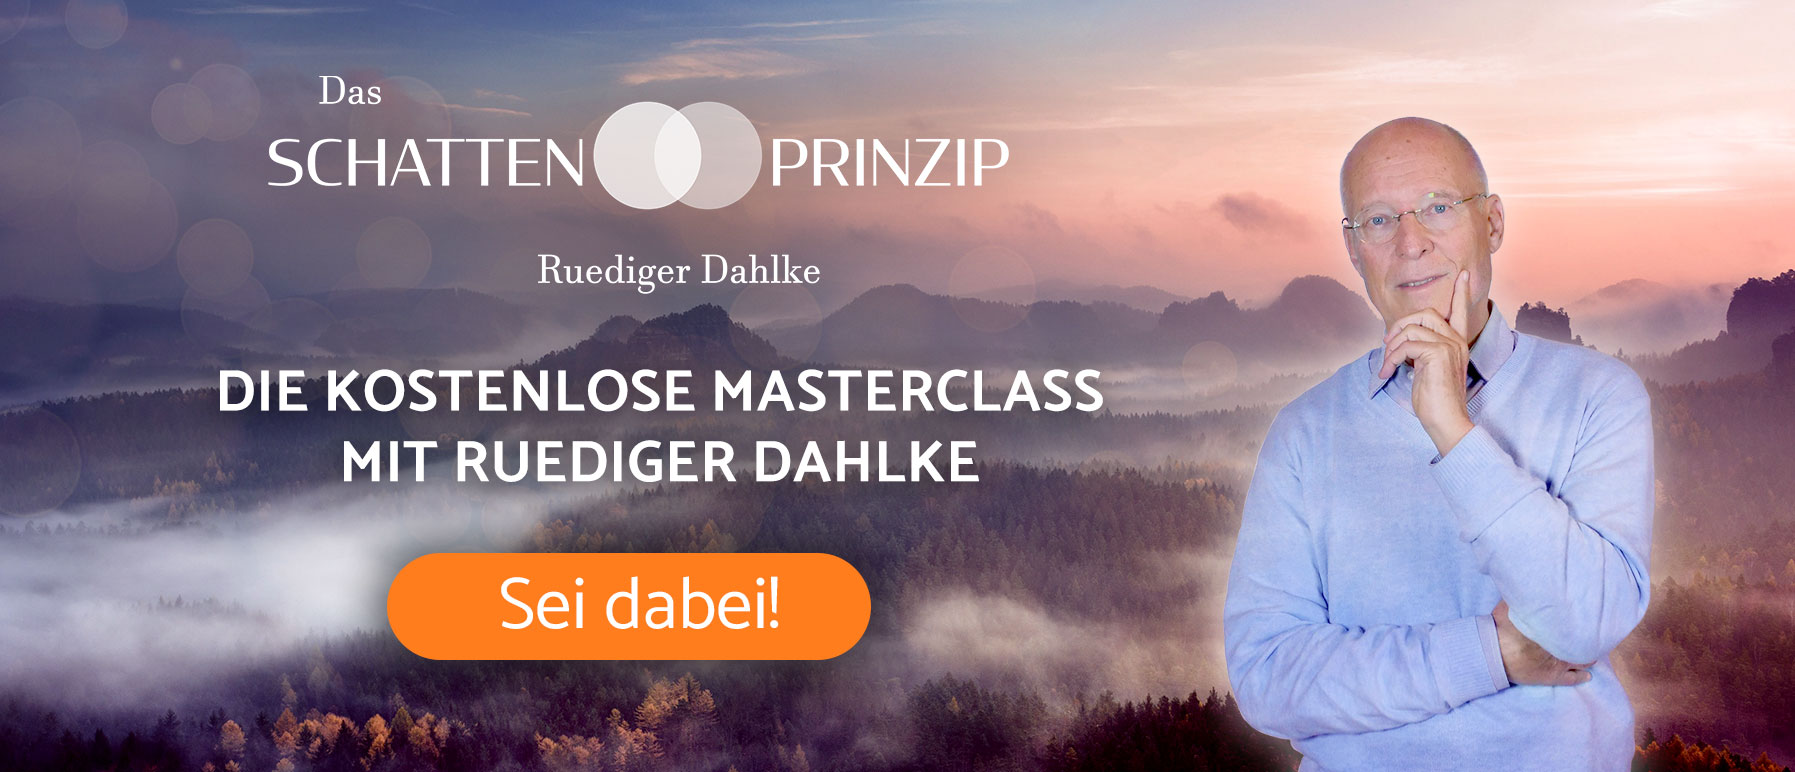 Dr. Ruediger Dahlke - Das Schattenprinzip Masterclass